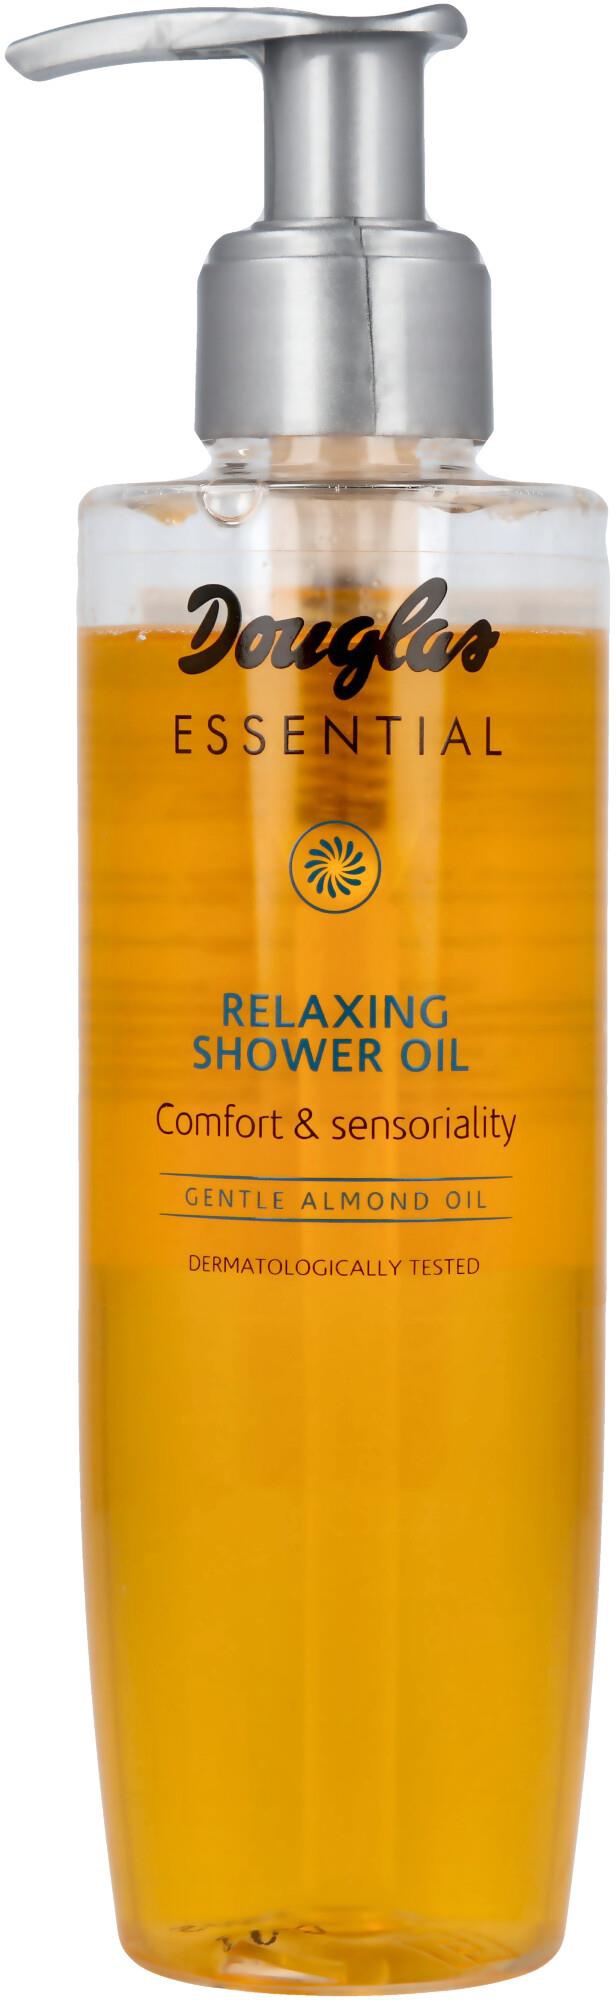 Douglas Relaxing Shower Oil